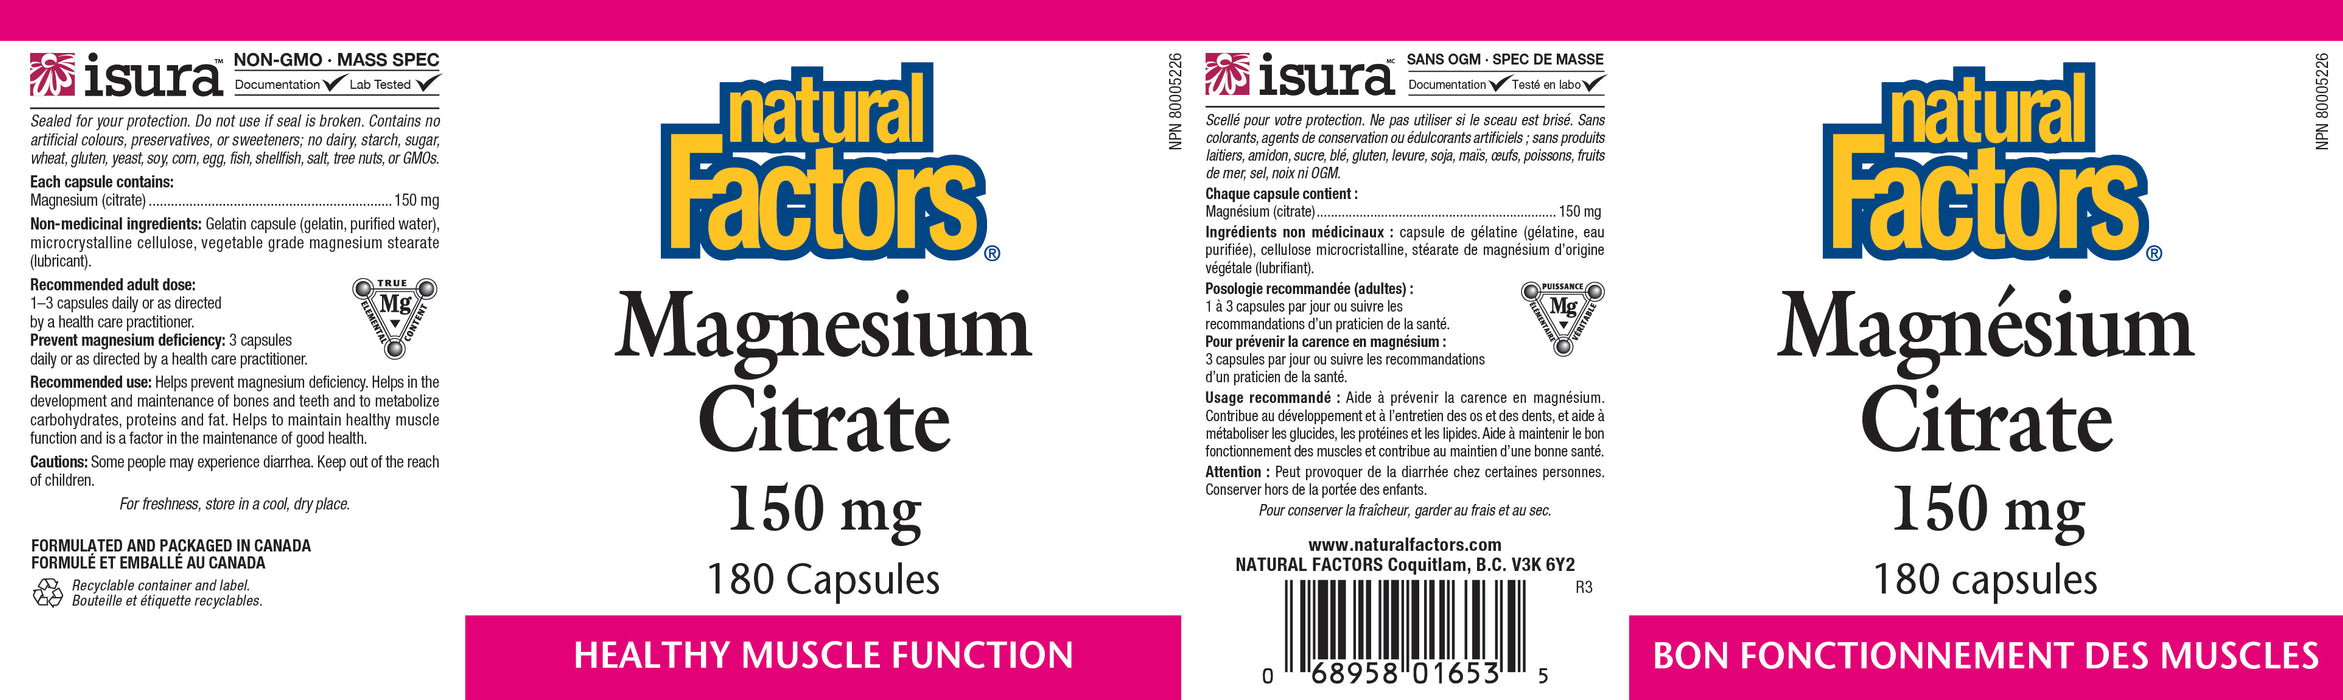 Natural Factors Magnesium Citrate 150mg 180 Veg Capsules